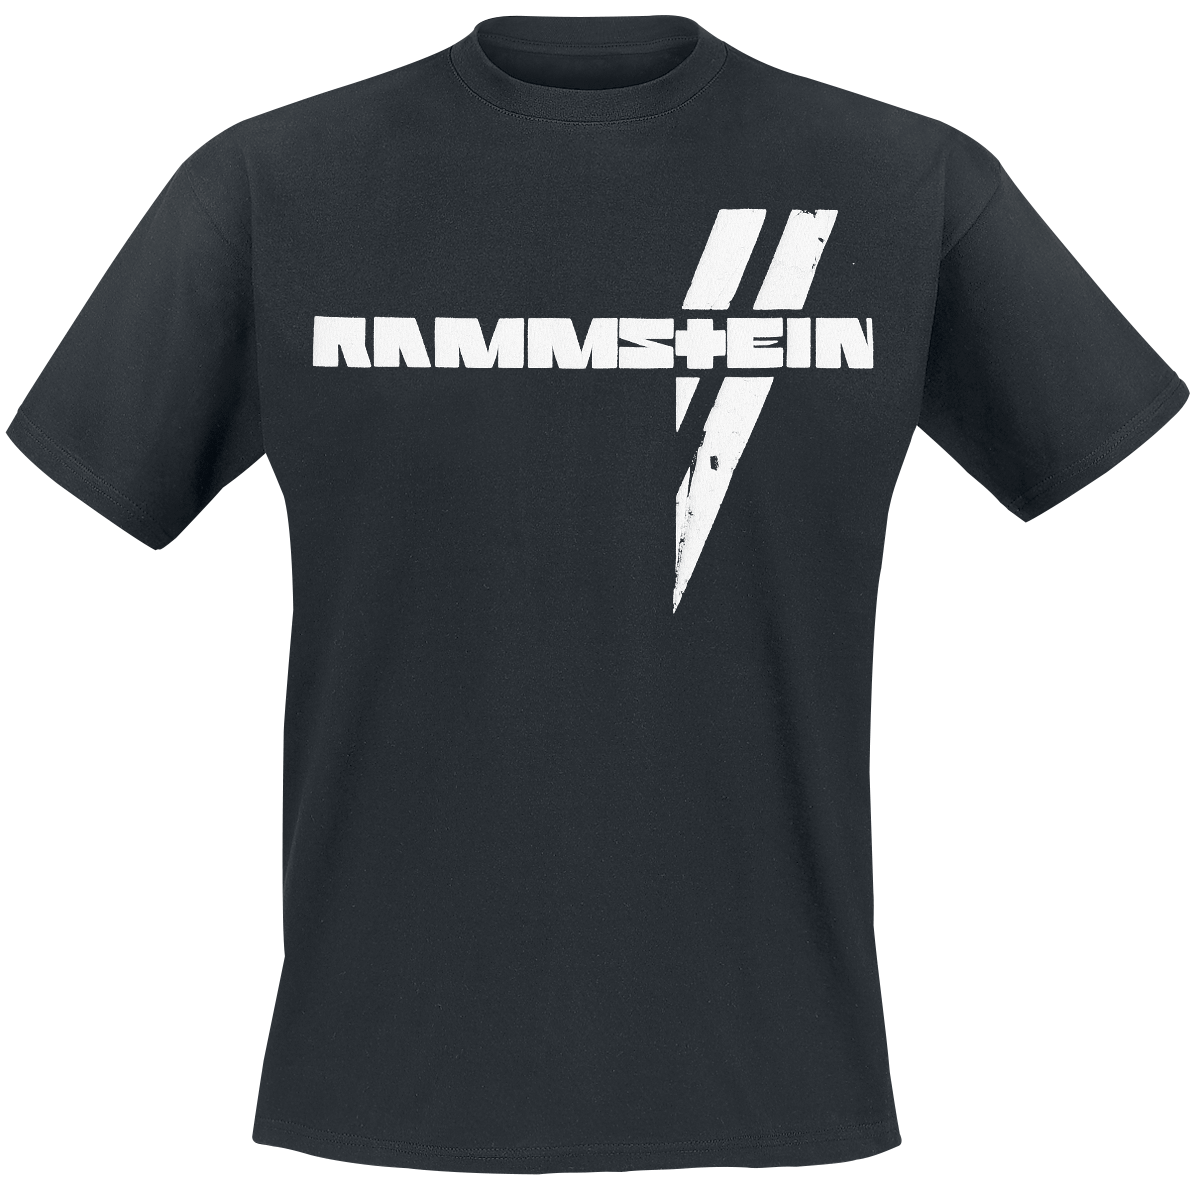 Rammstein - Weiße Balken - T-Shirt - schwarz